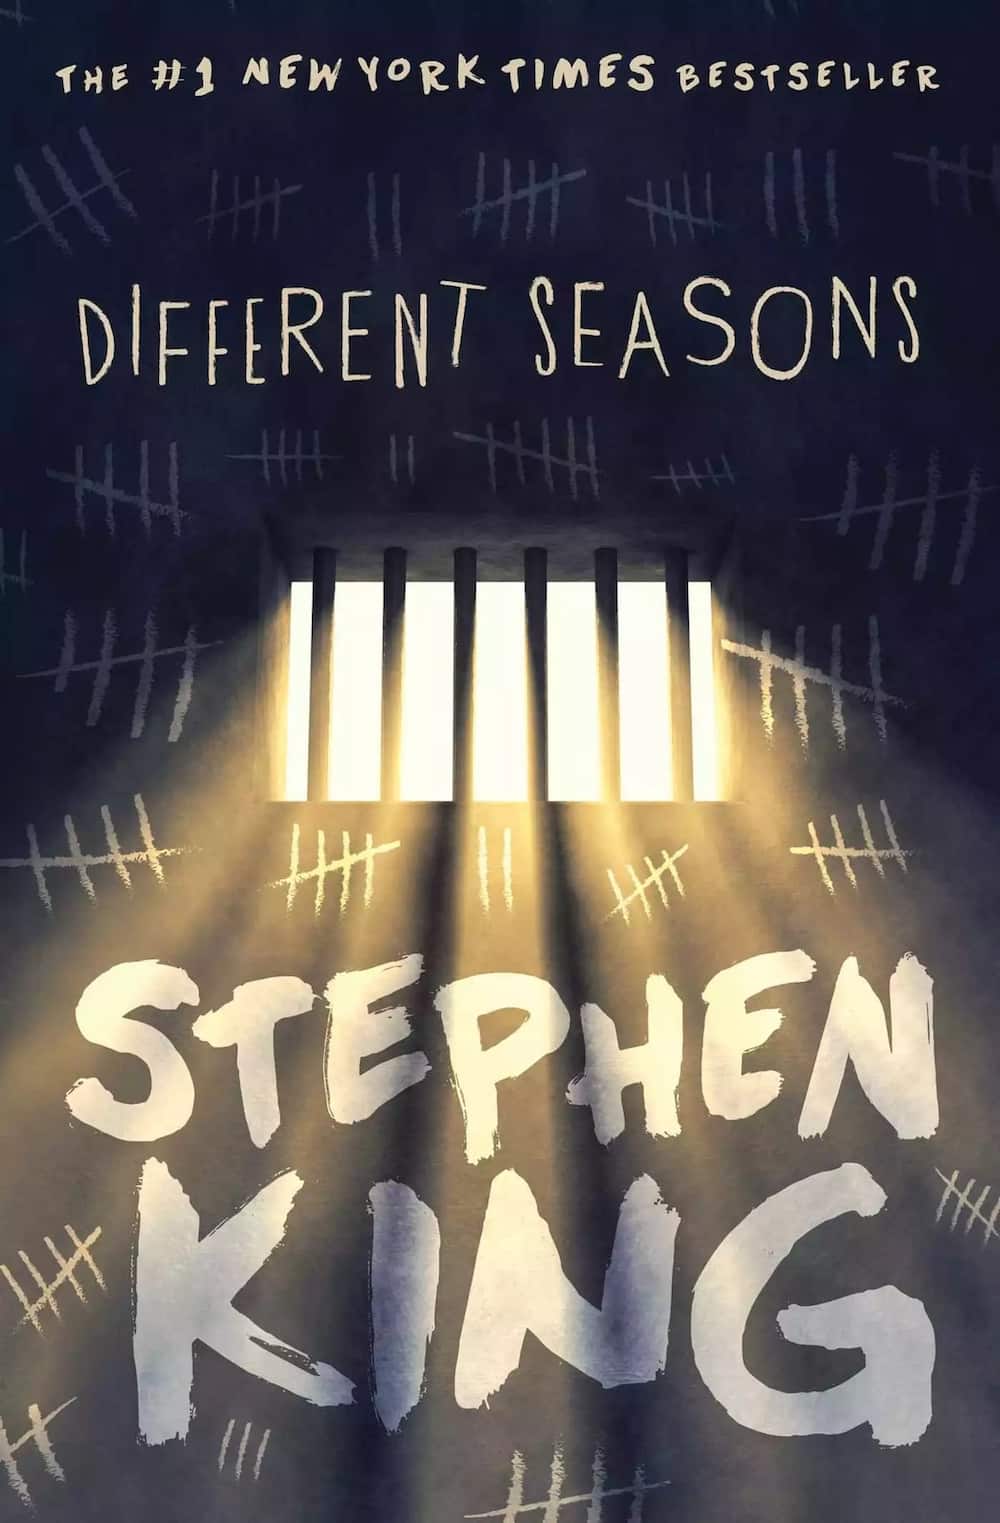 New Stephen king books, Latest Stephen king books, Stephen king books 2018